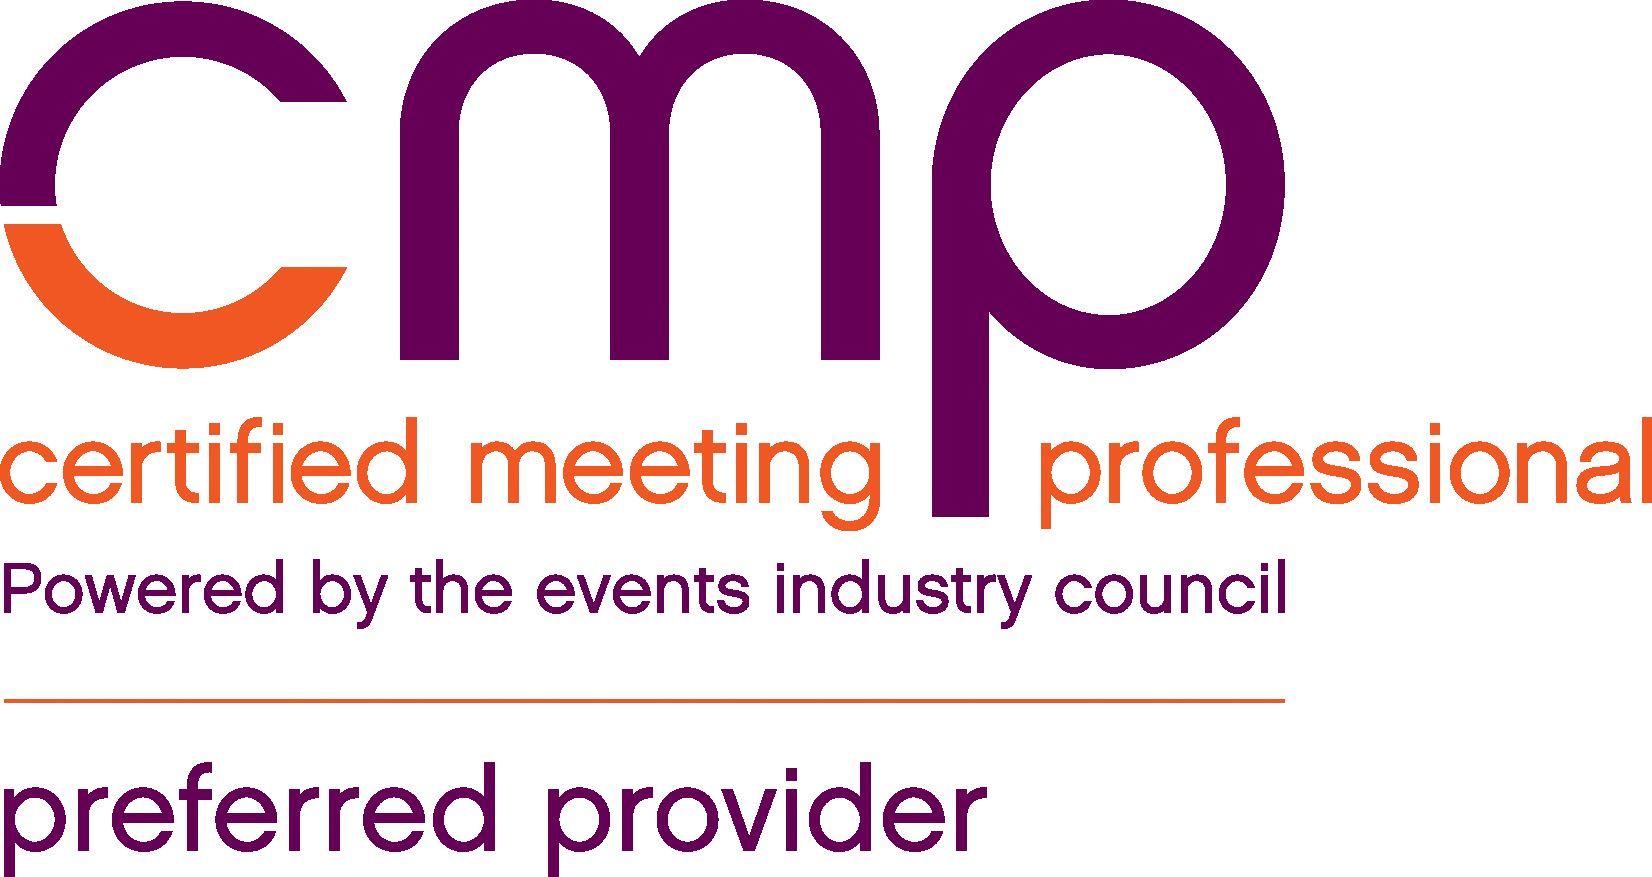 CMP Logo - CMP logo Encounter Florida Encounter